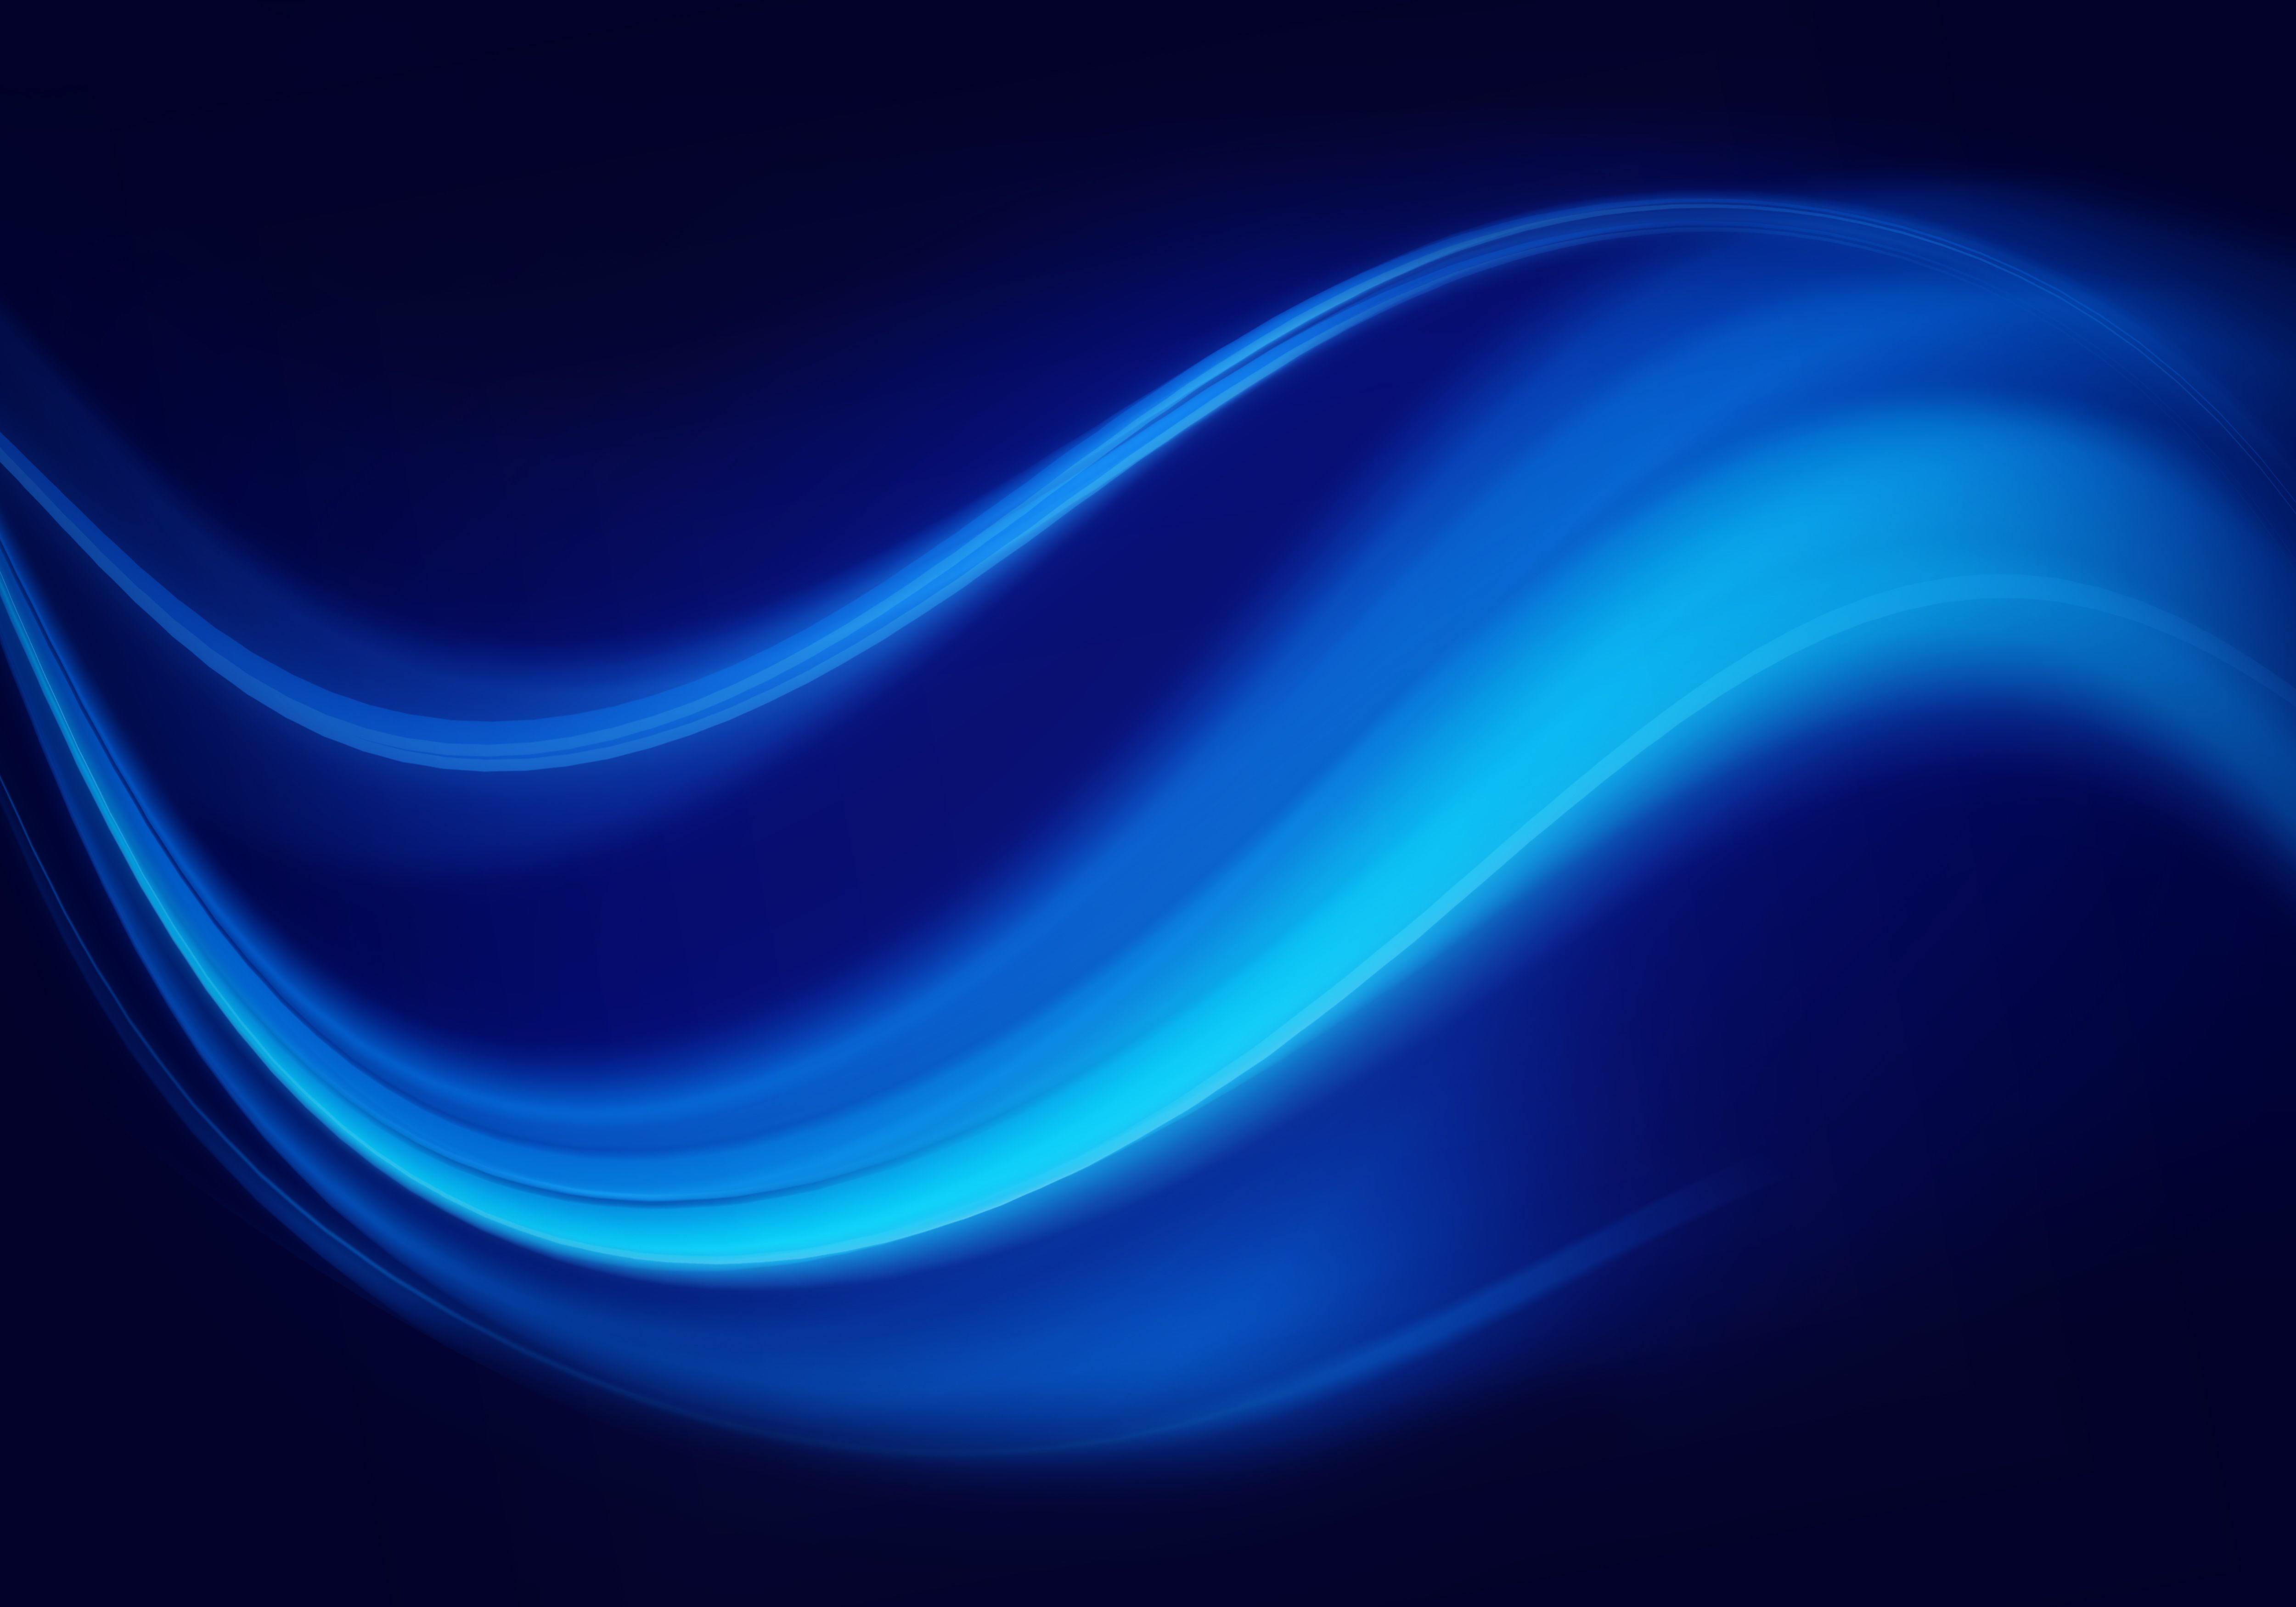 Dark Blue Swirl Abstract Texture Background /dark Blue Swirl Abstract Texture Backgro. Abstract, Textured Background, Blue Abstract